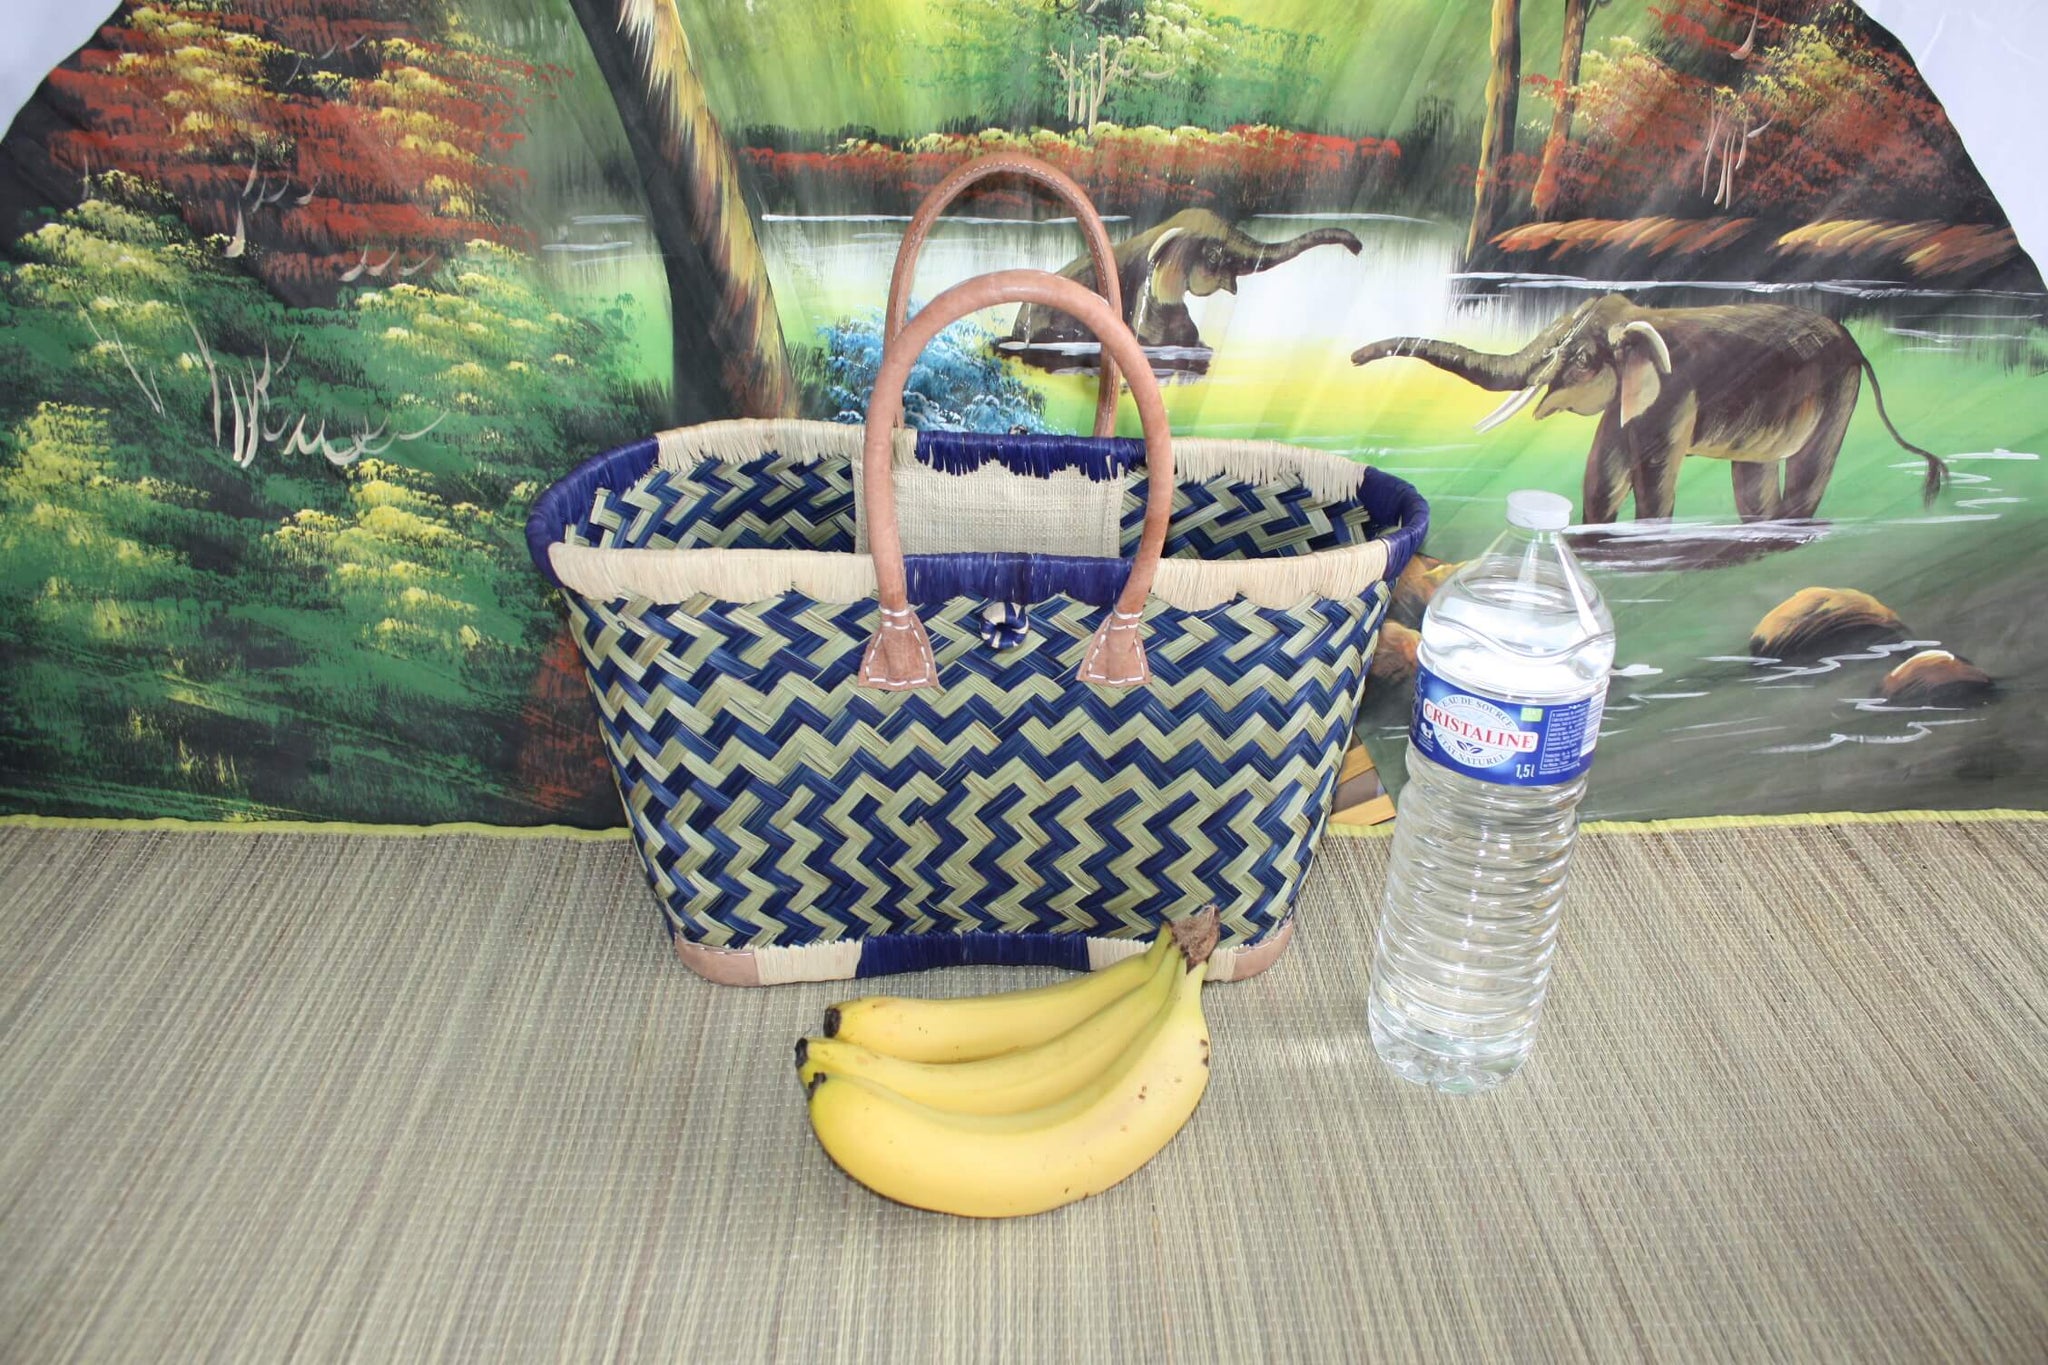 Einkaufskorb - ARTISANAL MADAGASCAR - Einkaufstasche in Natur und Blau - Handgewebt - 3 Größen zur Auswahl - Strandmarktgeflecht